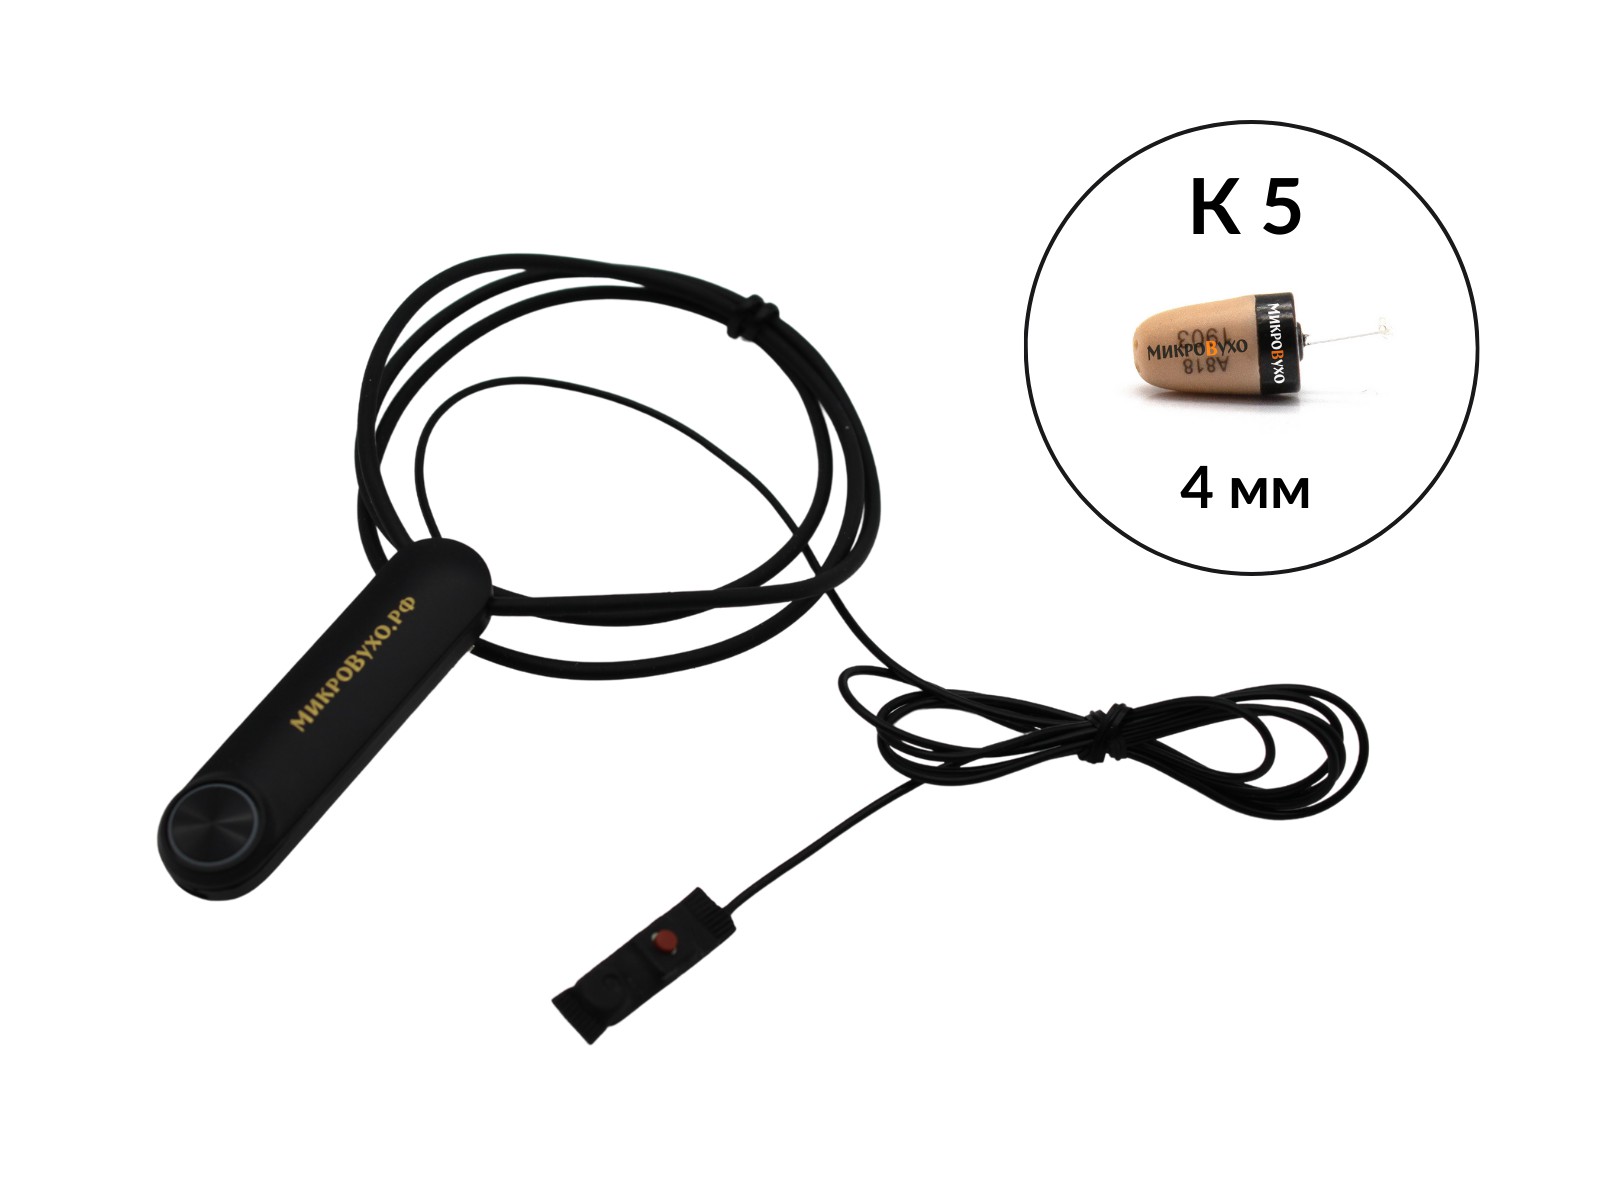 Гарнитура Bluetooth Standard с капсульным микронаушником K5 4 мм - изображение 5